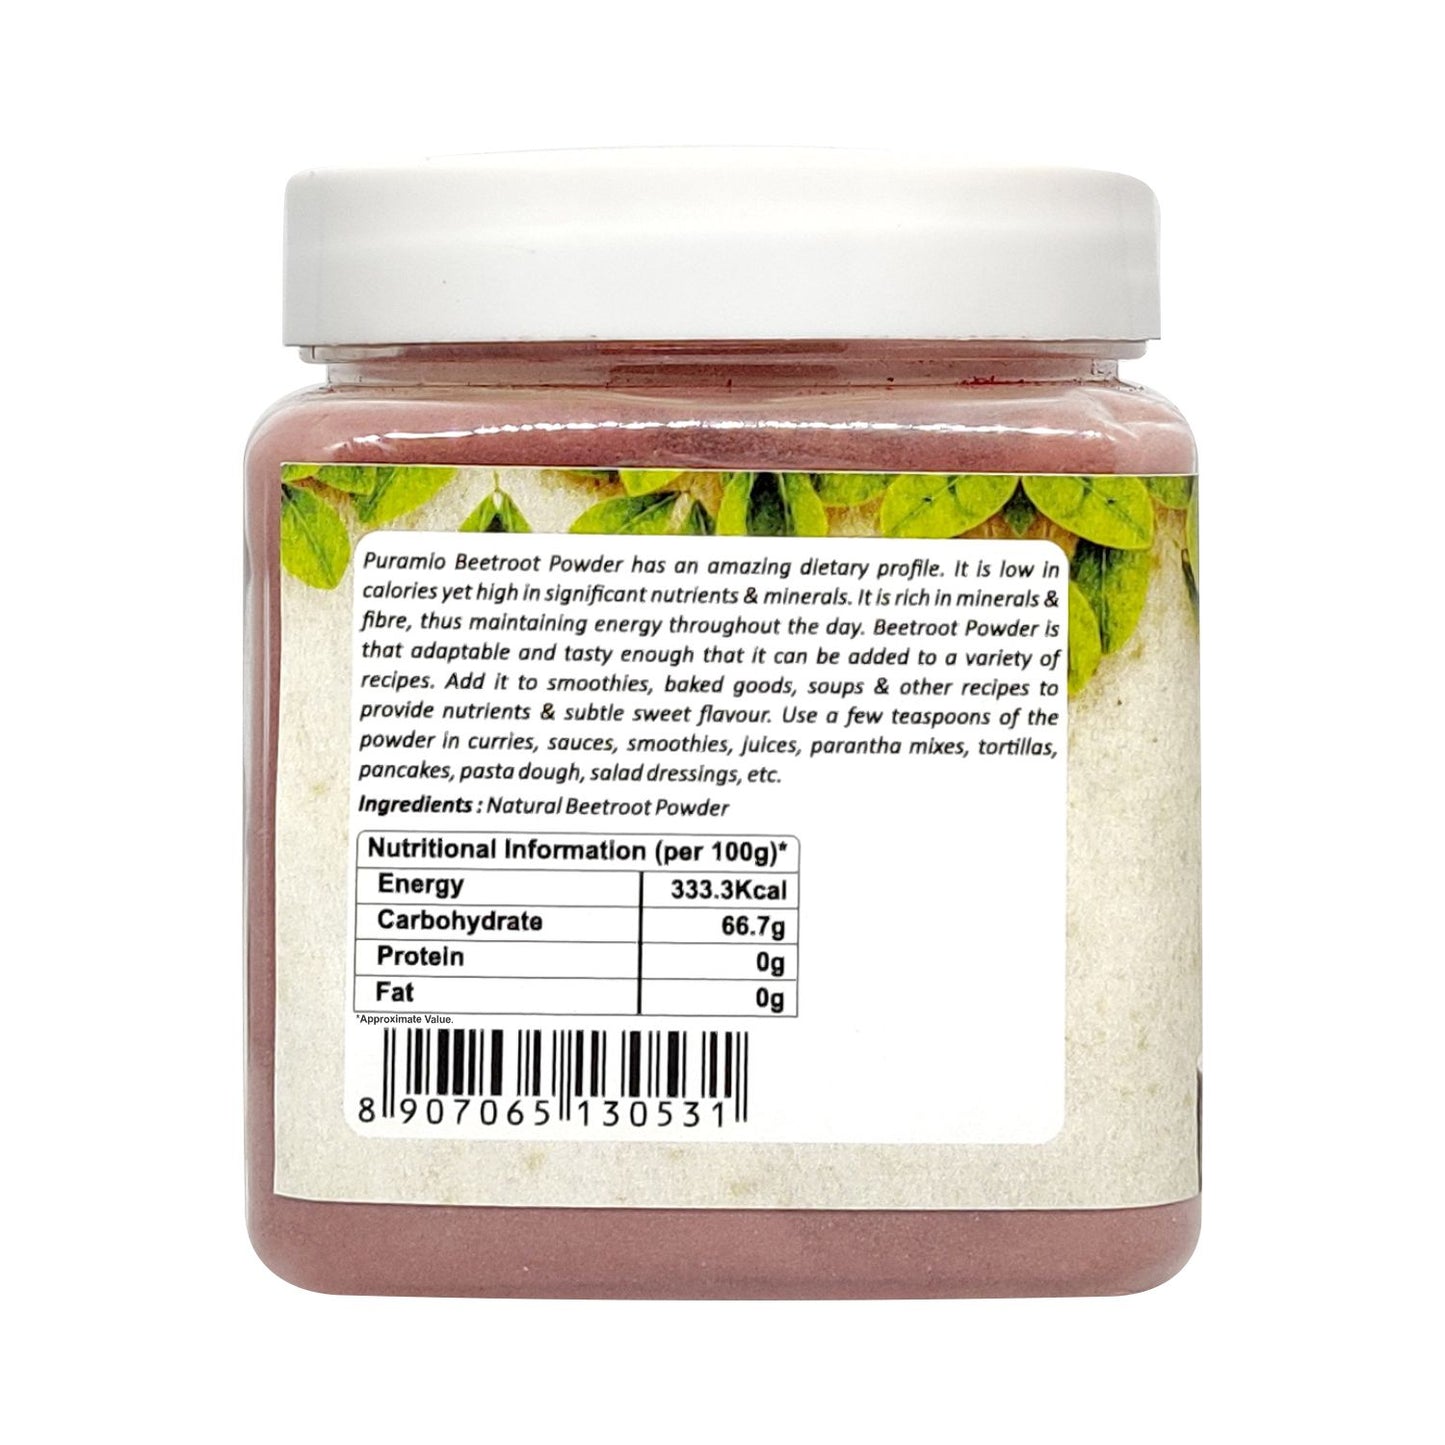 Puramio [100% Natural] Beet Root Powder